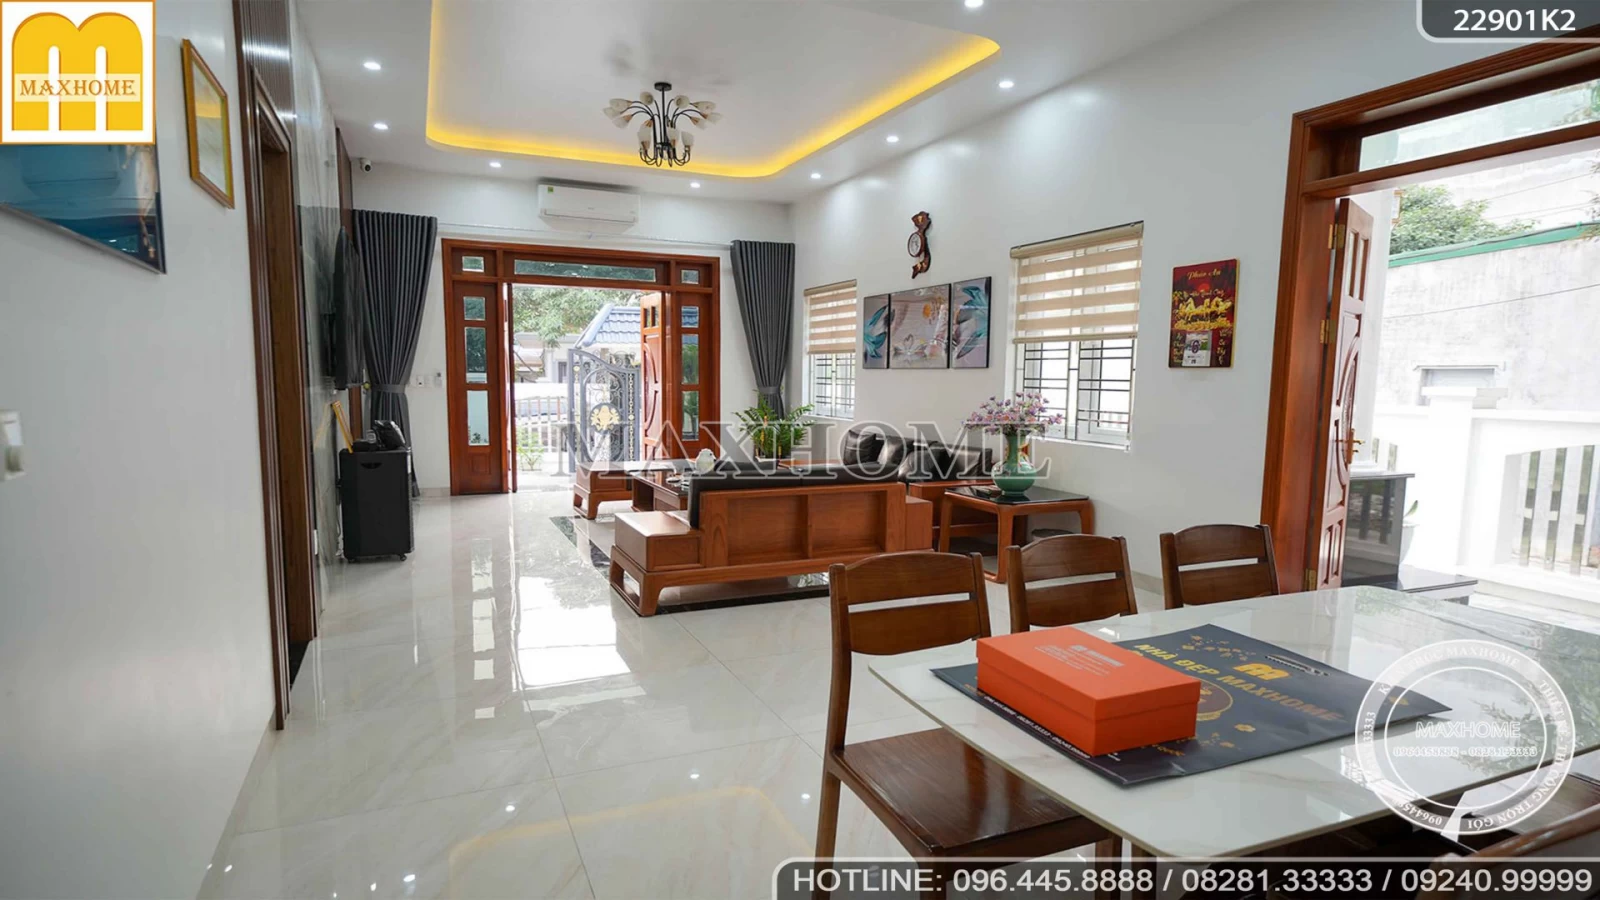 Ngắm nhìn trọn bộ nội thất hiện đại, sang trọng cho ngôi nhà vườn mái Thái | MH03015